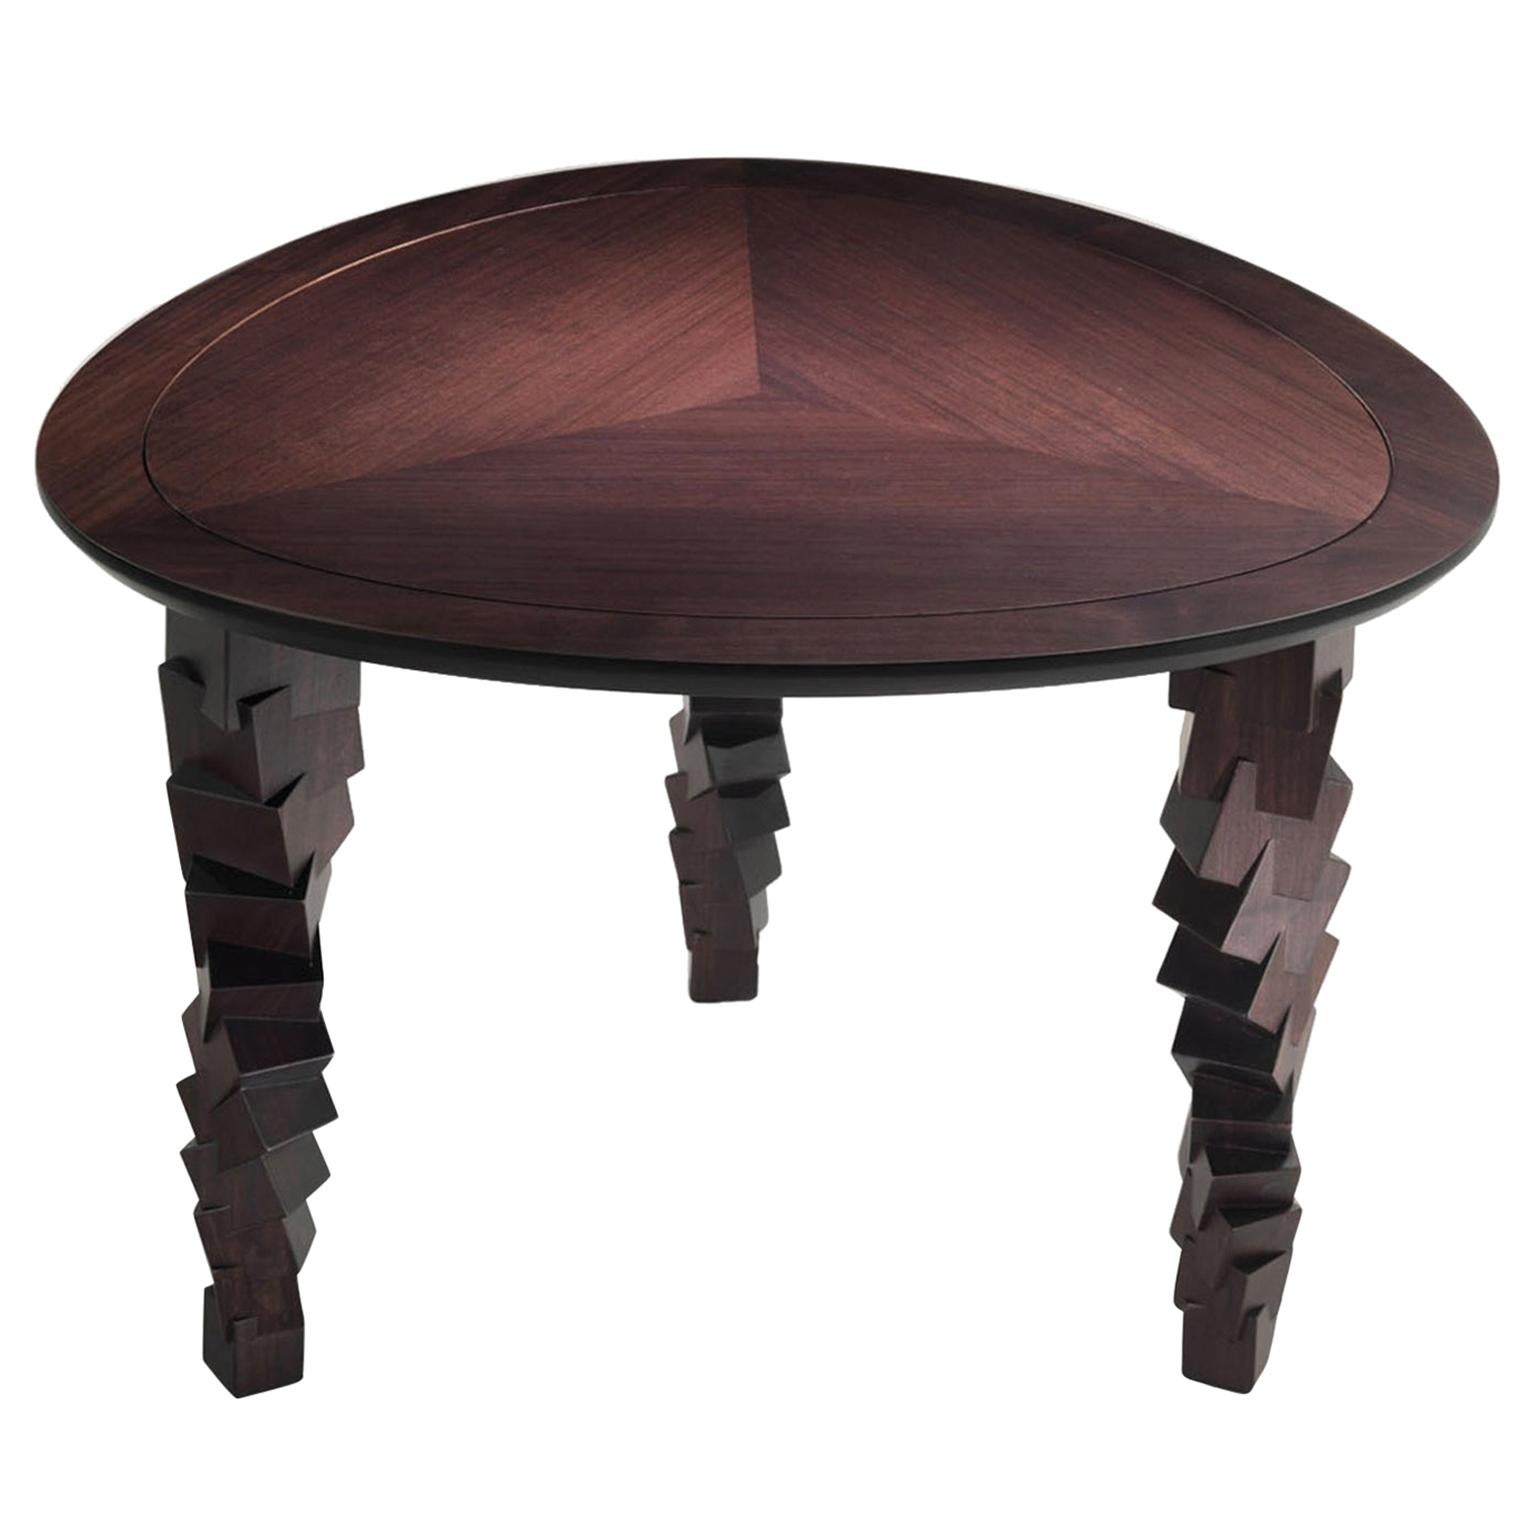 LUI/4 Brauner geschnitzter kleiner Tisch aus Massivholz mit eingelegter Platte und geschnitzten Beinen 